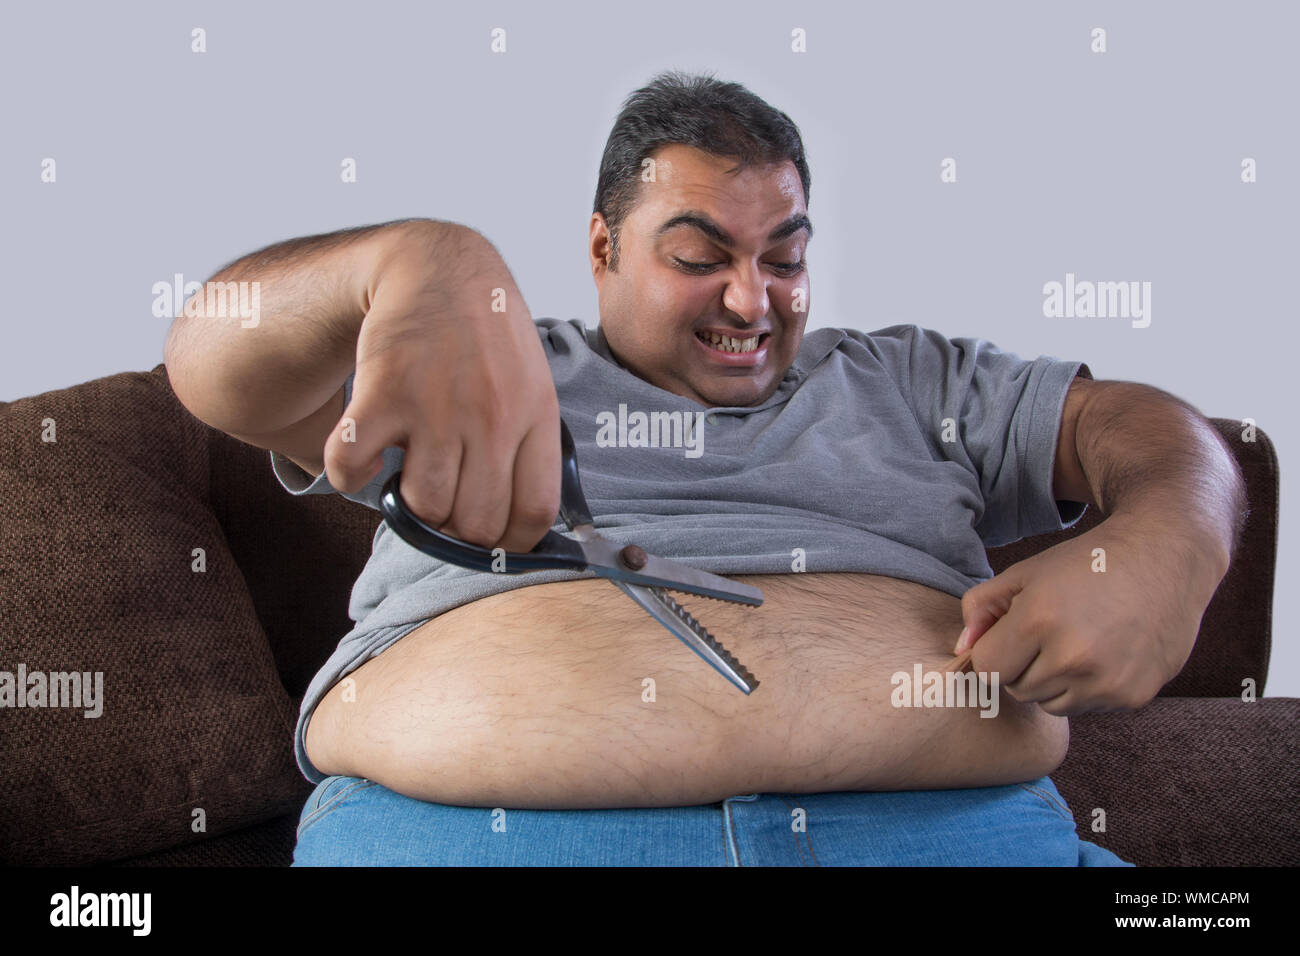 Obeso hombre con tijeras en una mano y la grasa del vientre en otros con intención de cortar el exceso de grasa Foto de stock